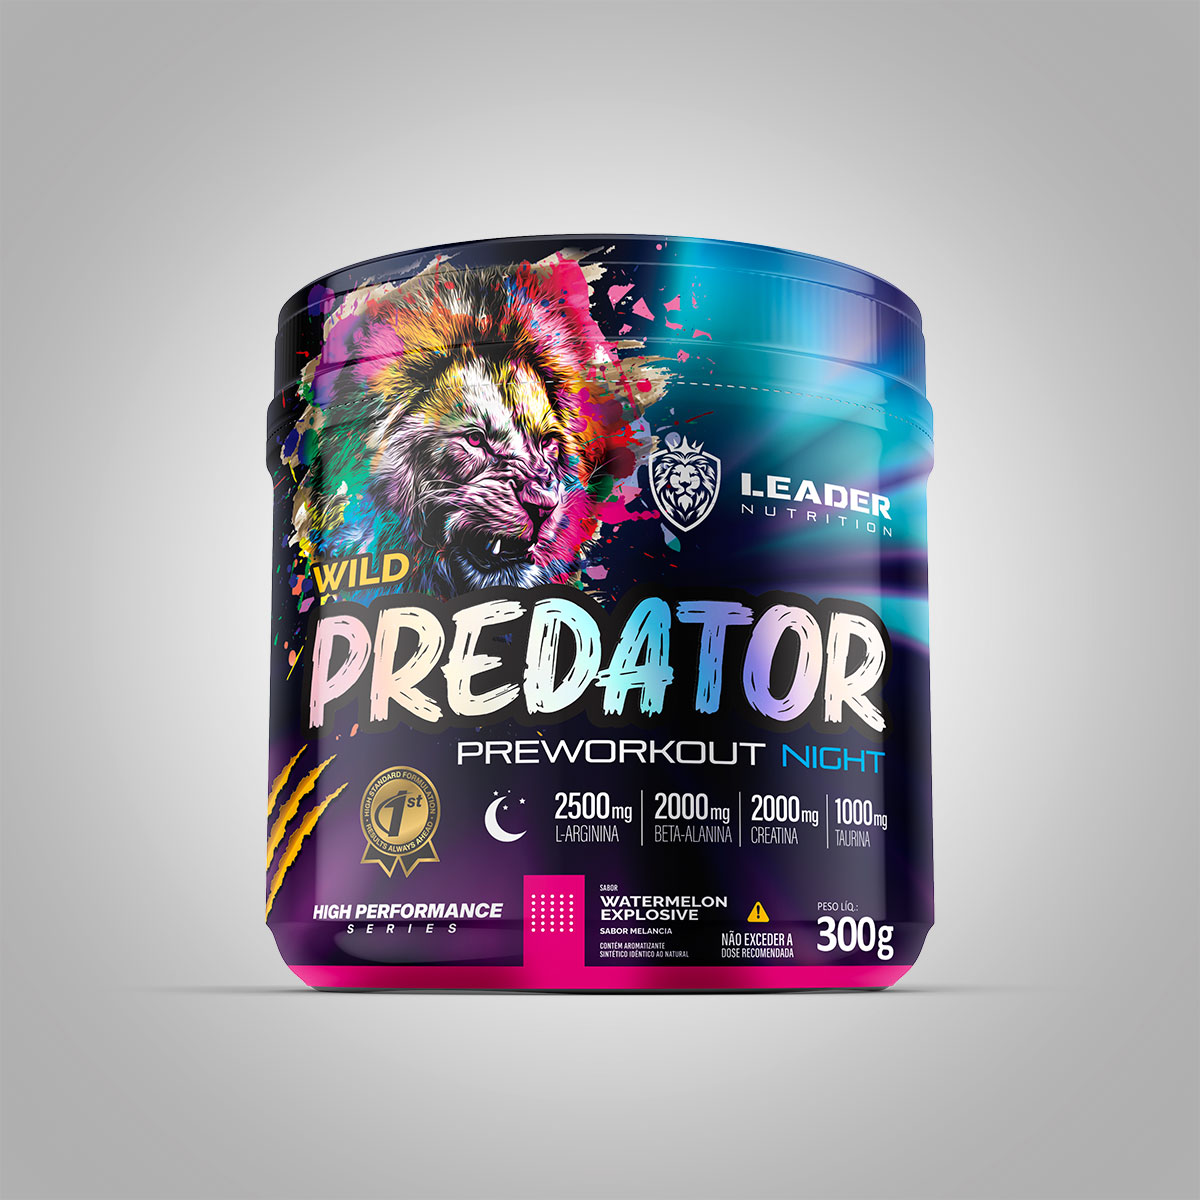 Predator Preworkout Noite (300 g) - Leader Nutrition